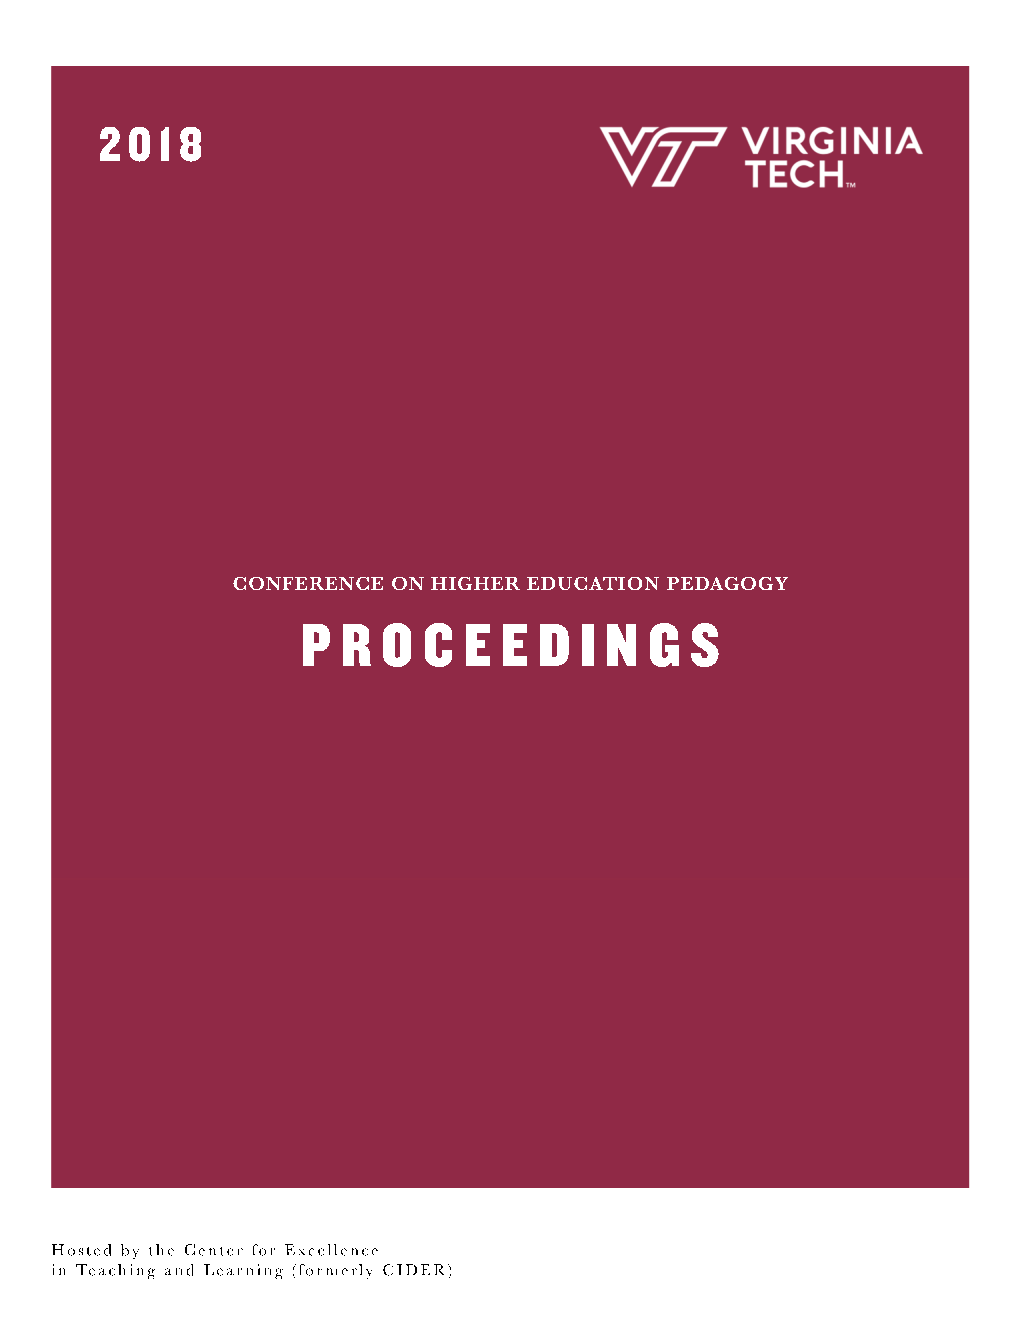 CHEP 2018 Proceedings Final.Pdf